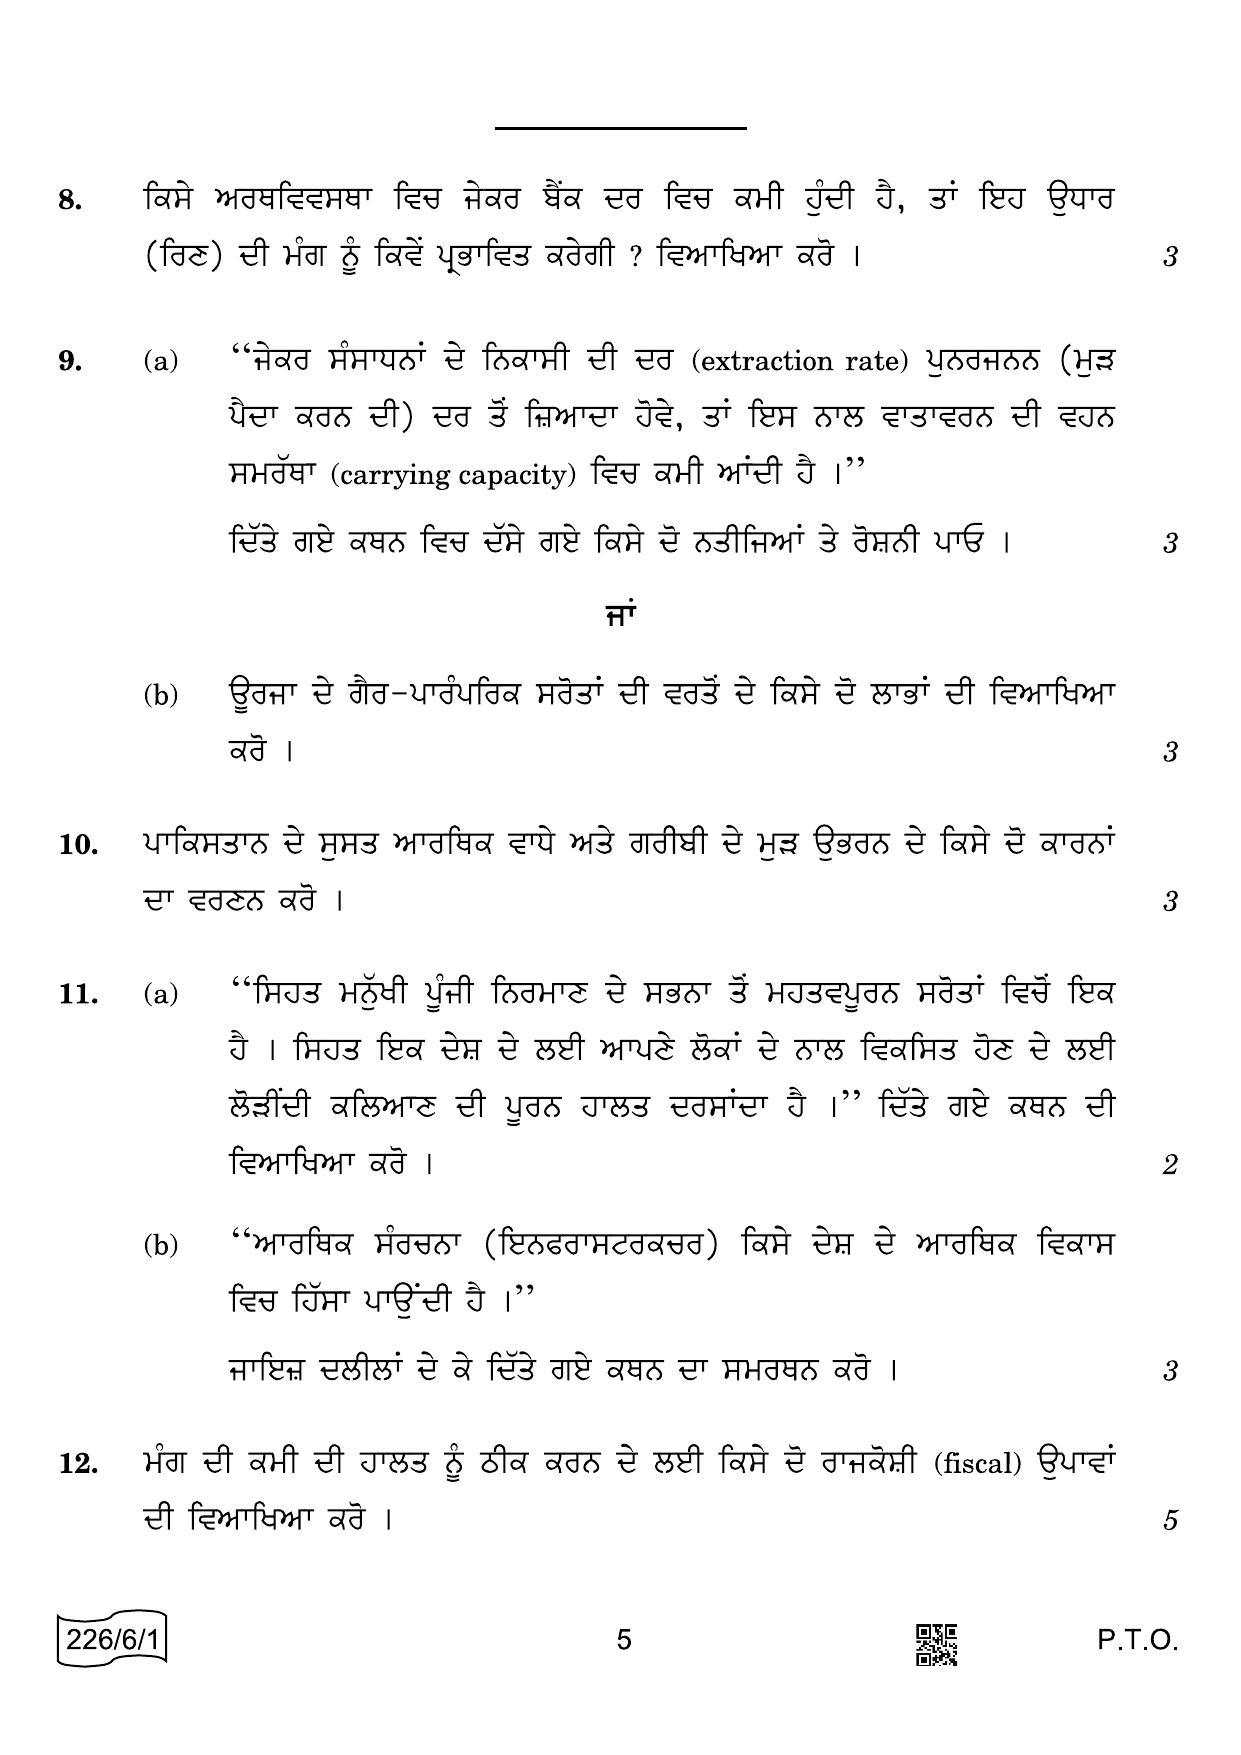 CBSE Class 12 226-6-1 Economics Punjabi 2022 Compartment Question Paper - Page 5